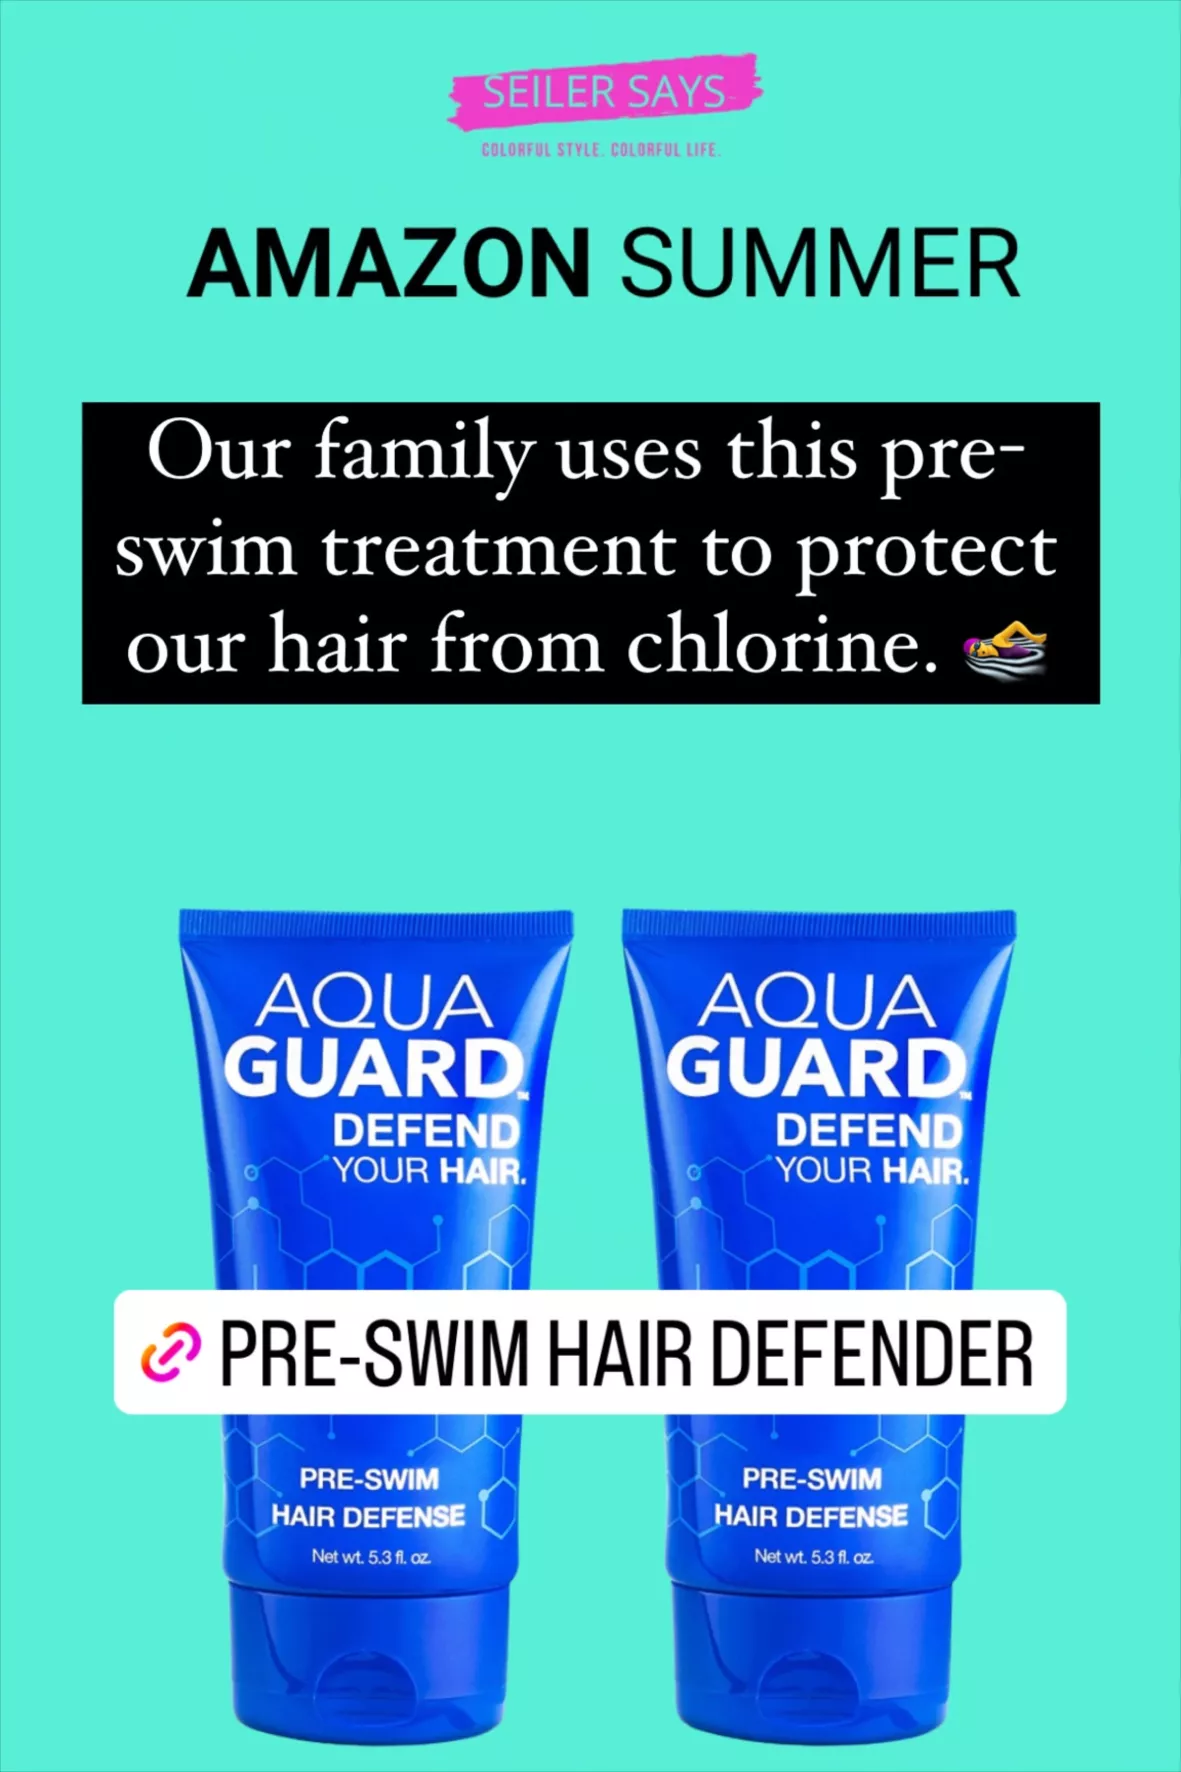 Get pre-swim hair protection: AquaGuard Hair Defense